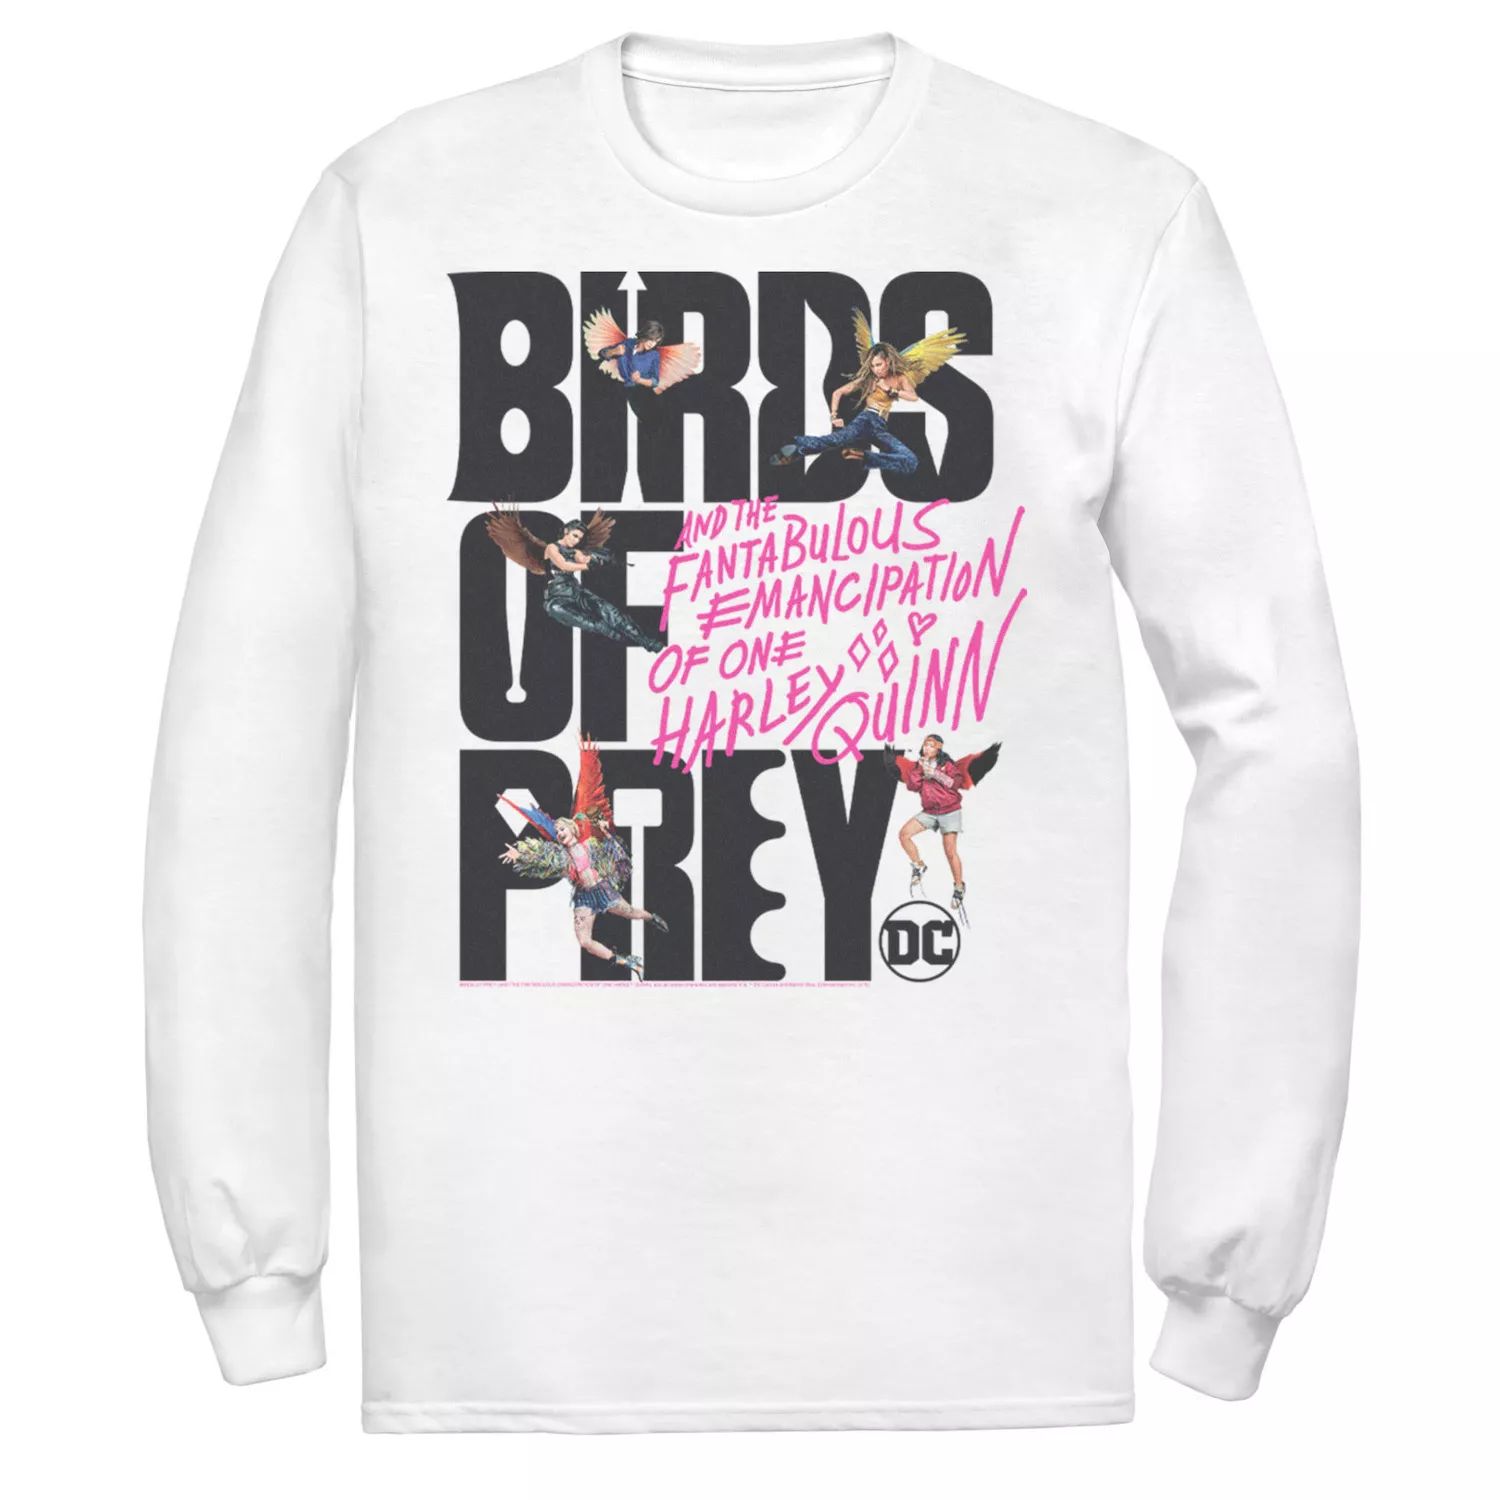 Мужская футболка с надписью «Хищные птицы» и коллажем DC Comics мужская футболка с текстовым логотипом хищные птицы dc comics